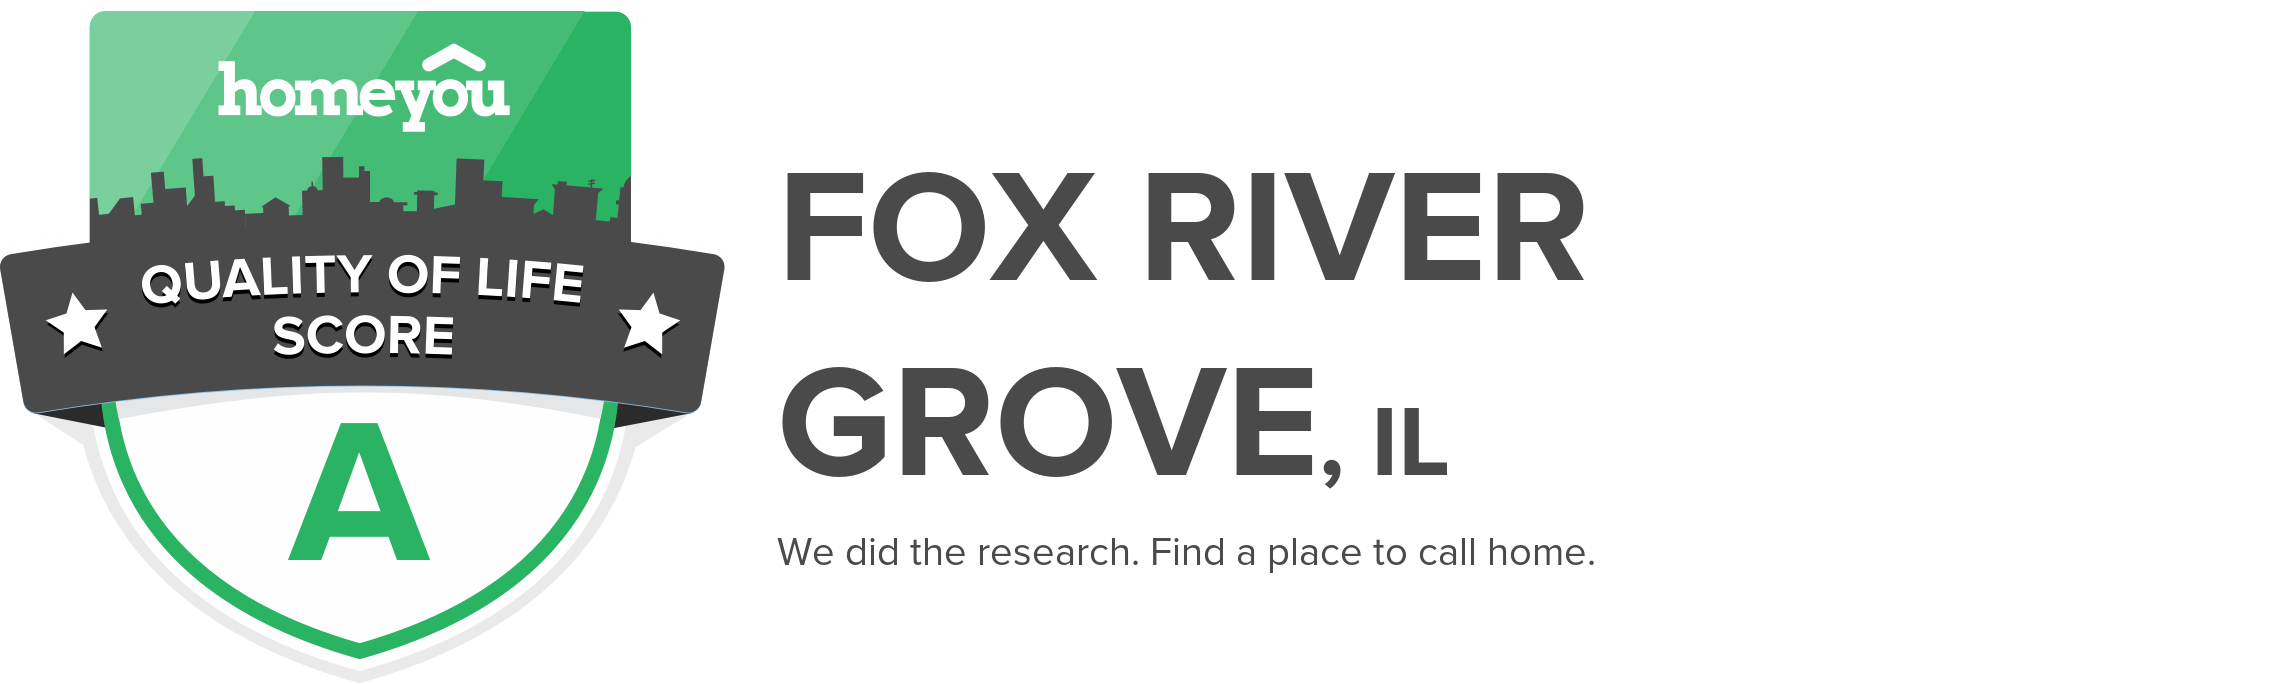 Fox River Grove, IL